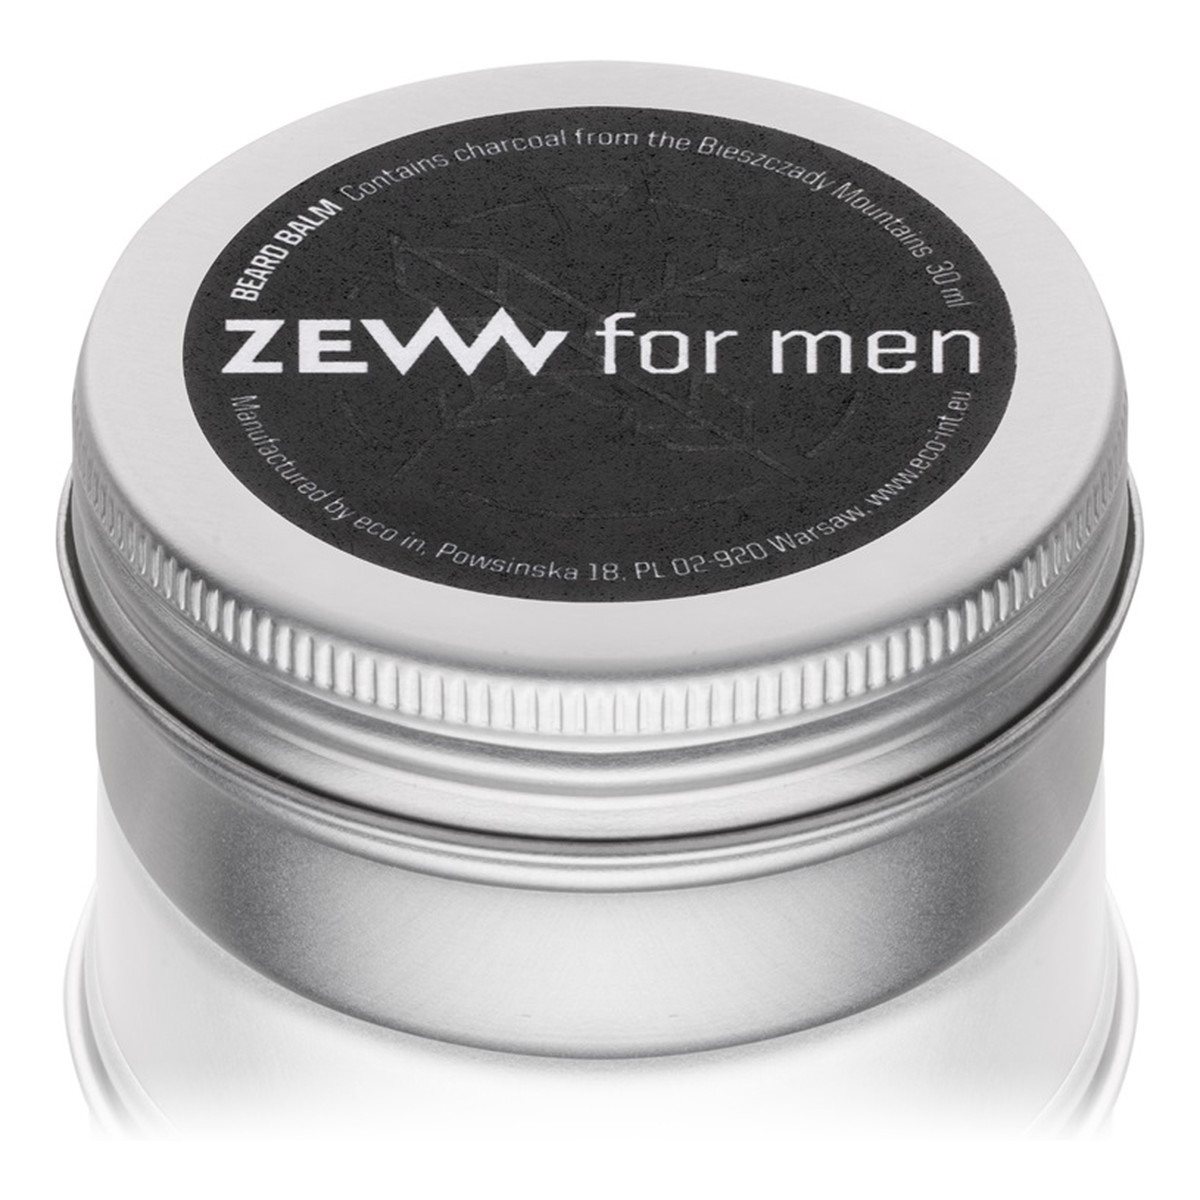 Zew For Men Balsam do brody zawiera węgiel drzewny z Bieszczad 30ml